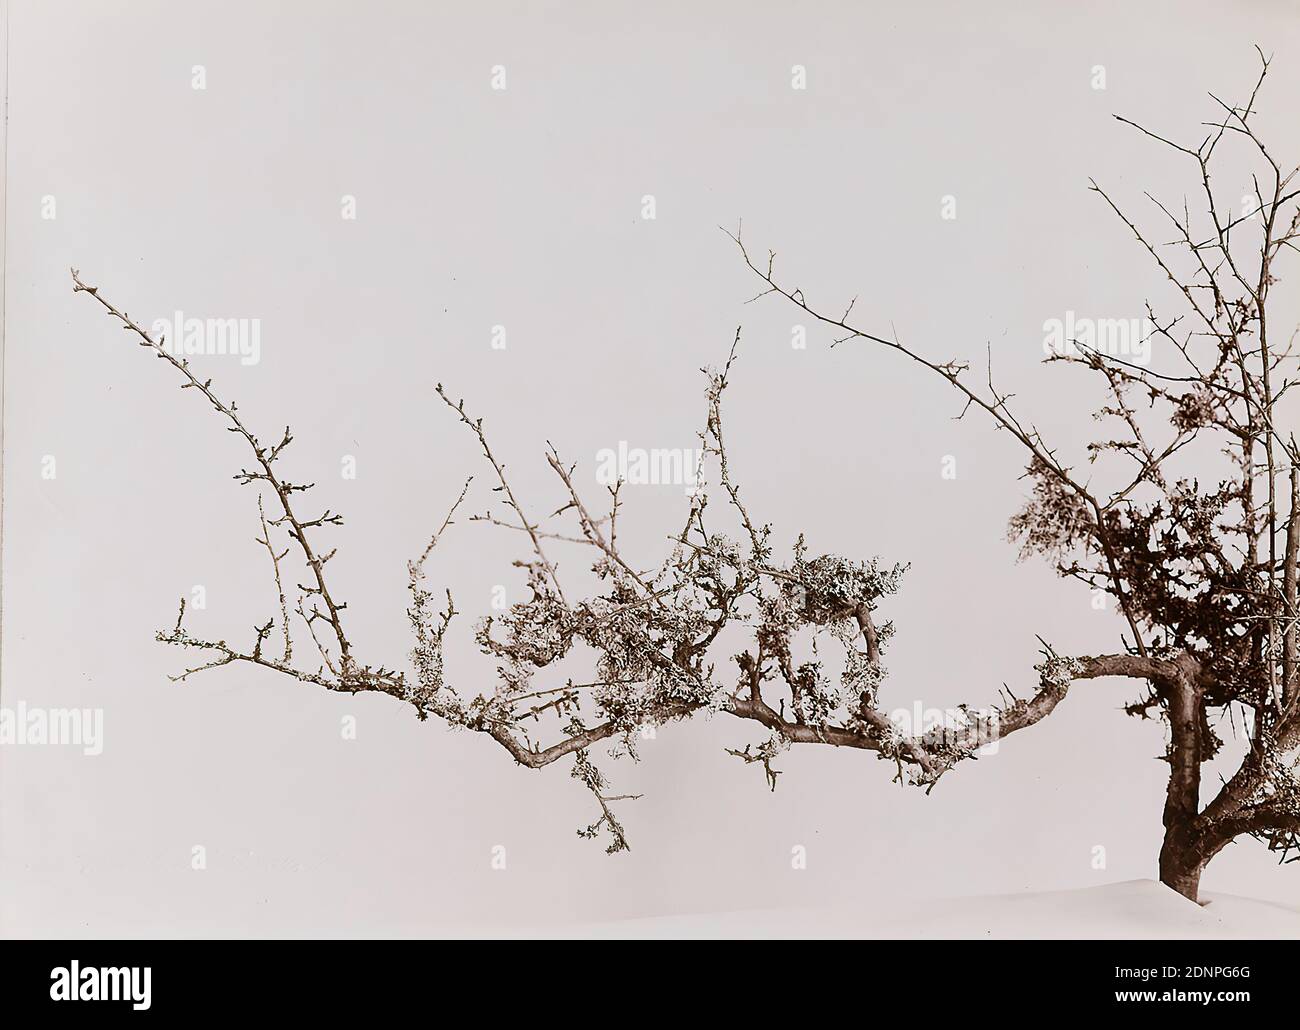 Wilhelm Weimar, Schleedornzweig adornato con lichene, carta da collodio, processo positivo in bianco e nero, totale: Altezza: 16.90 cm; larghezza: 23.30 cm, fotografia, piante, vegetazione Foto Stock